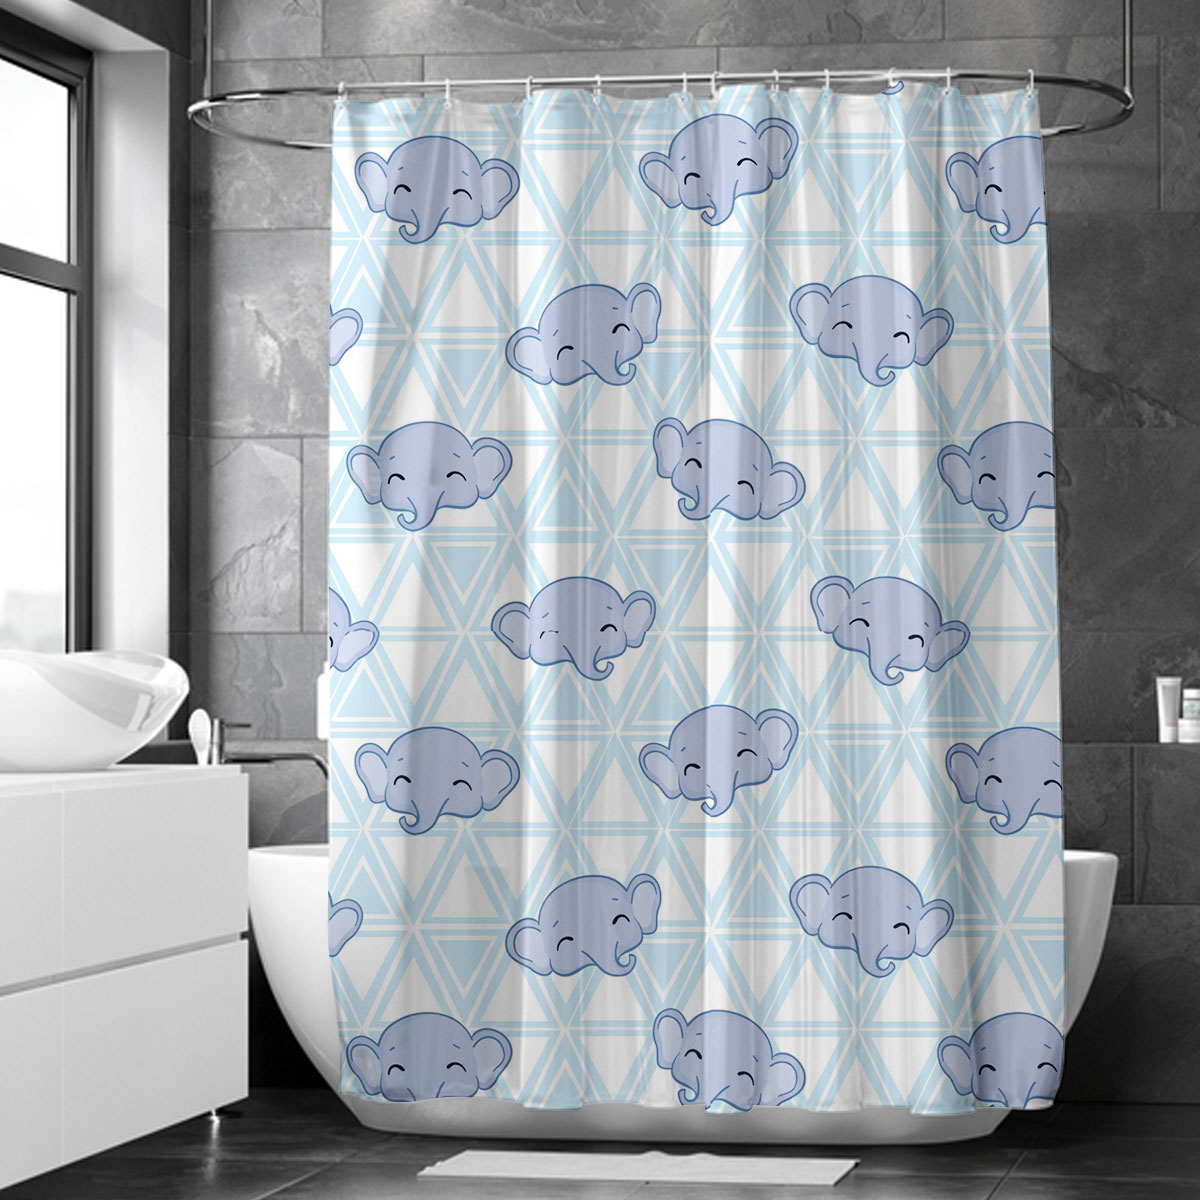 Cute Asian Elephant Face Shower Curtain 6